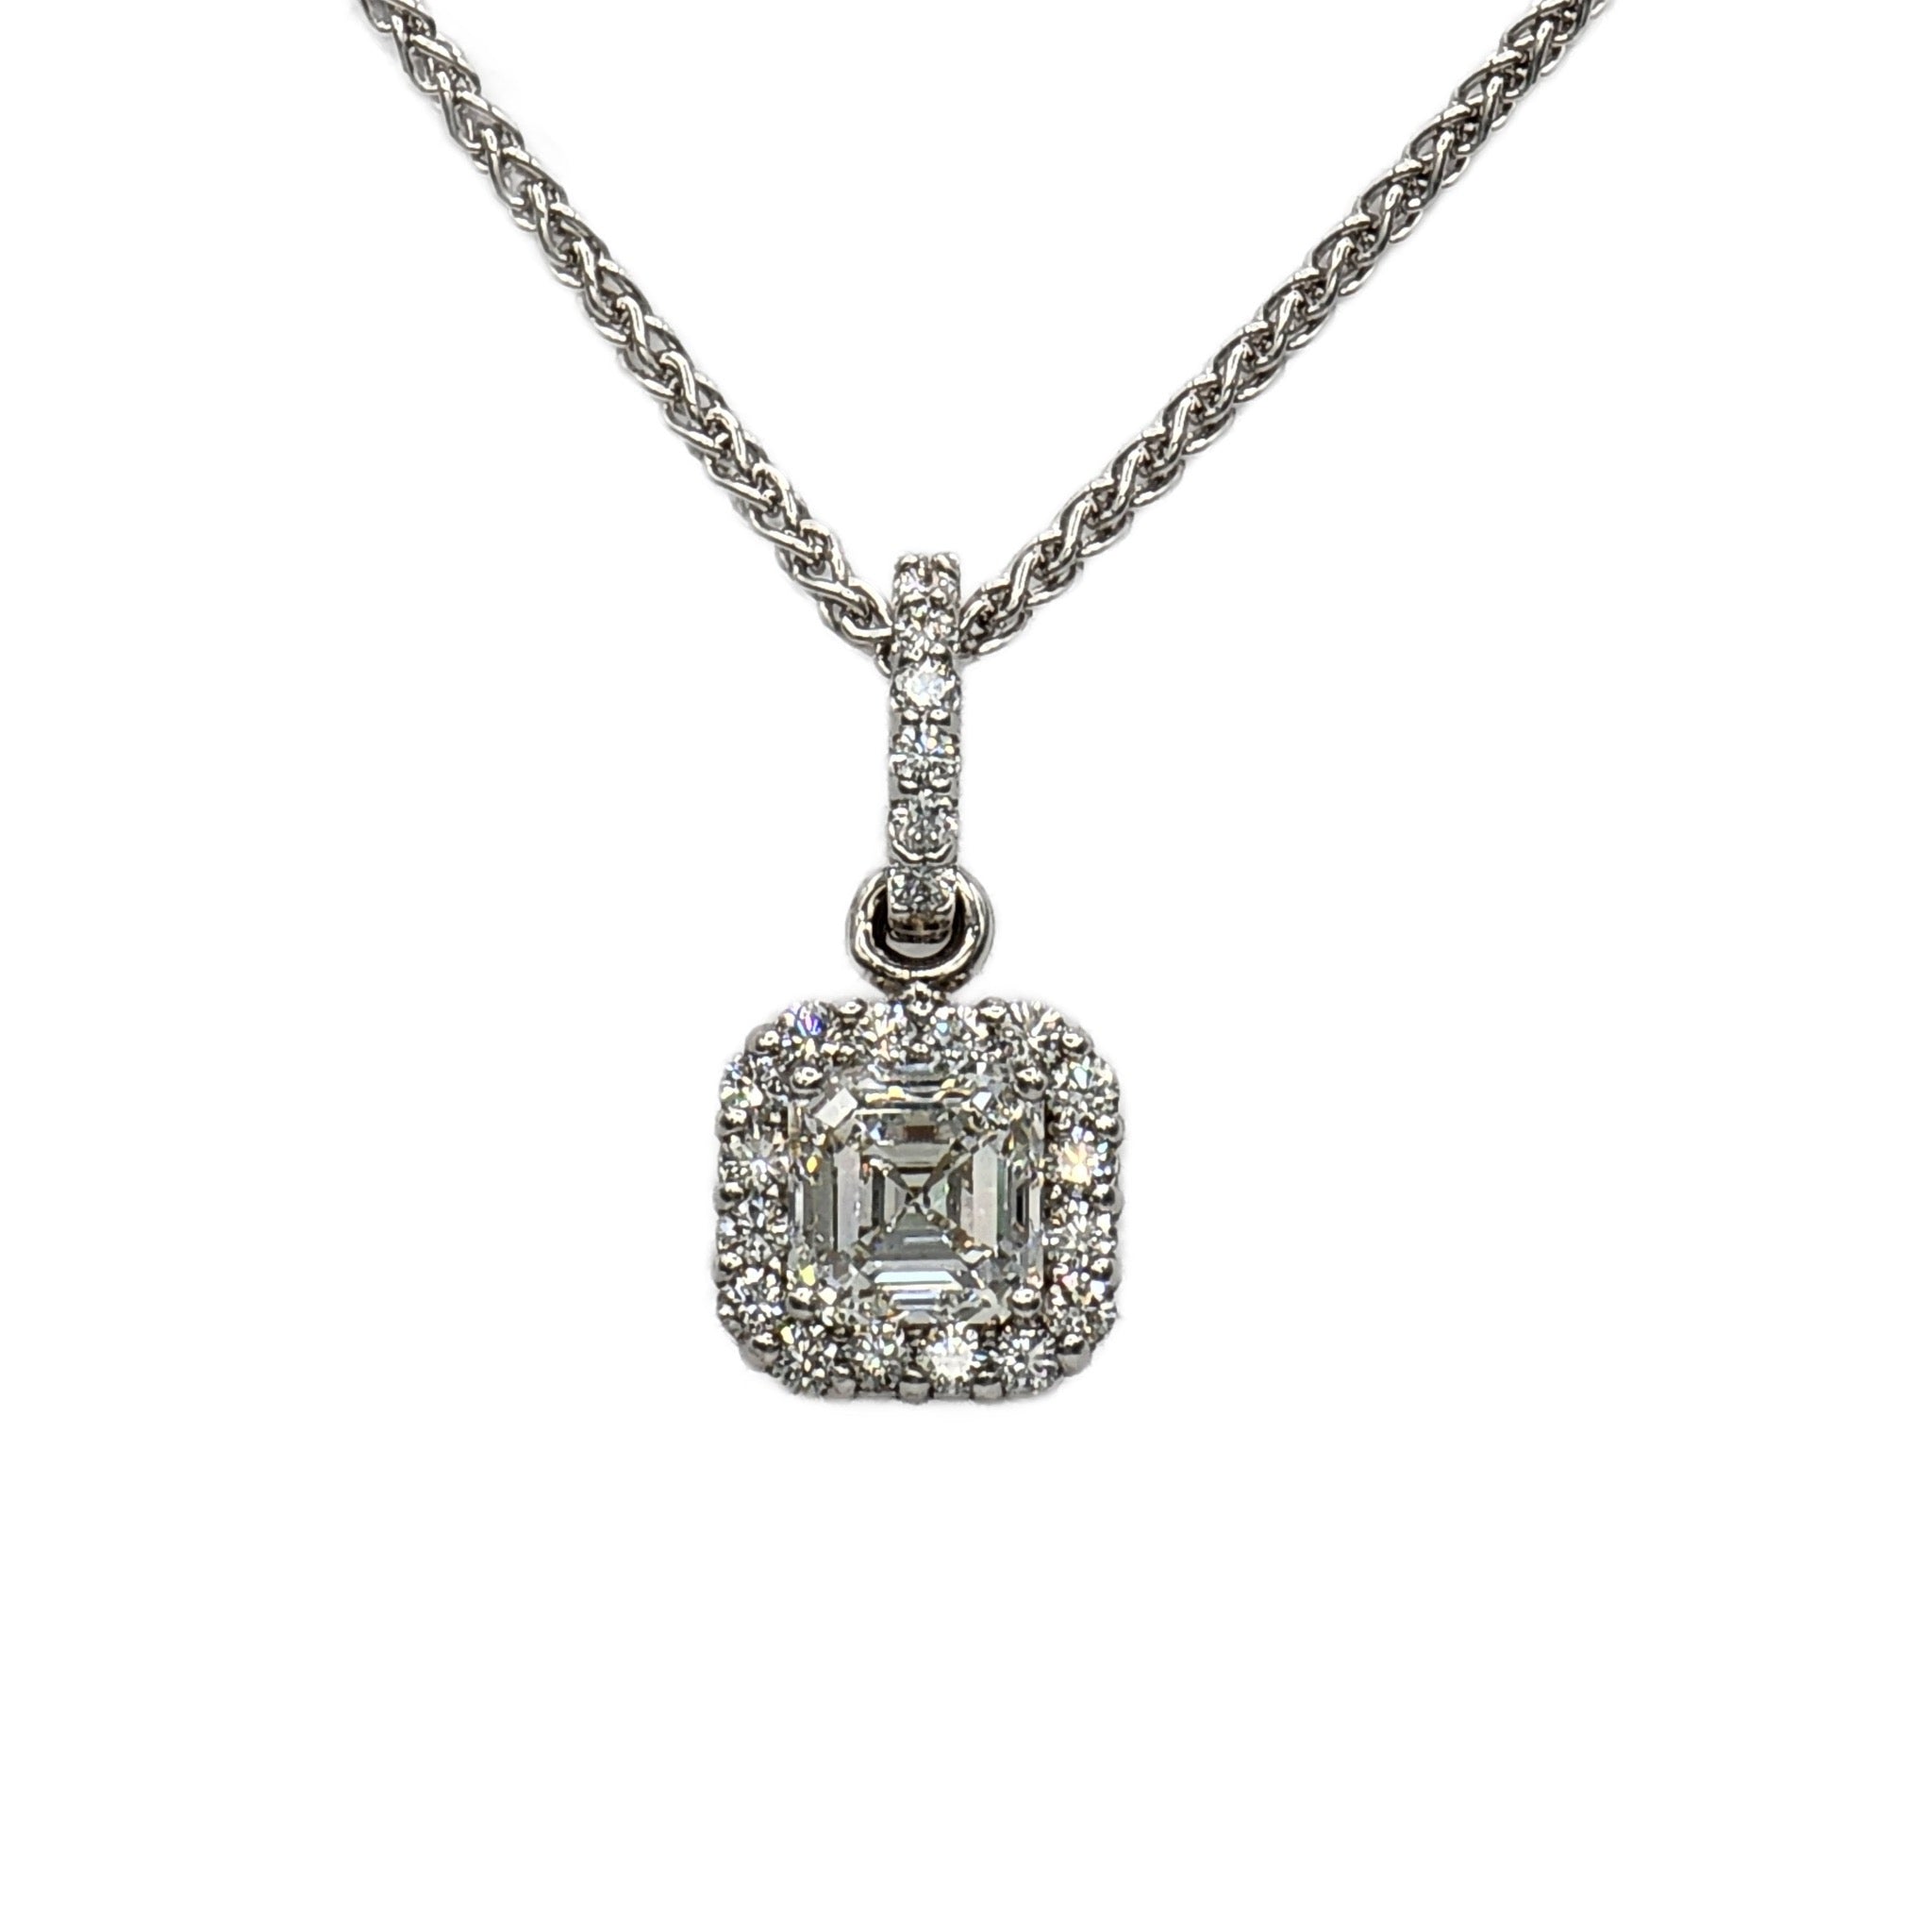 Korman Signature 18k White Gold Asscher Cut Diamond Cross Pendant Necklace  16-17